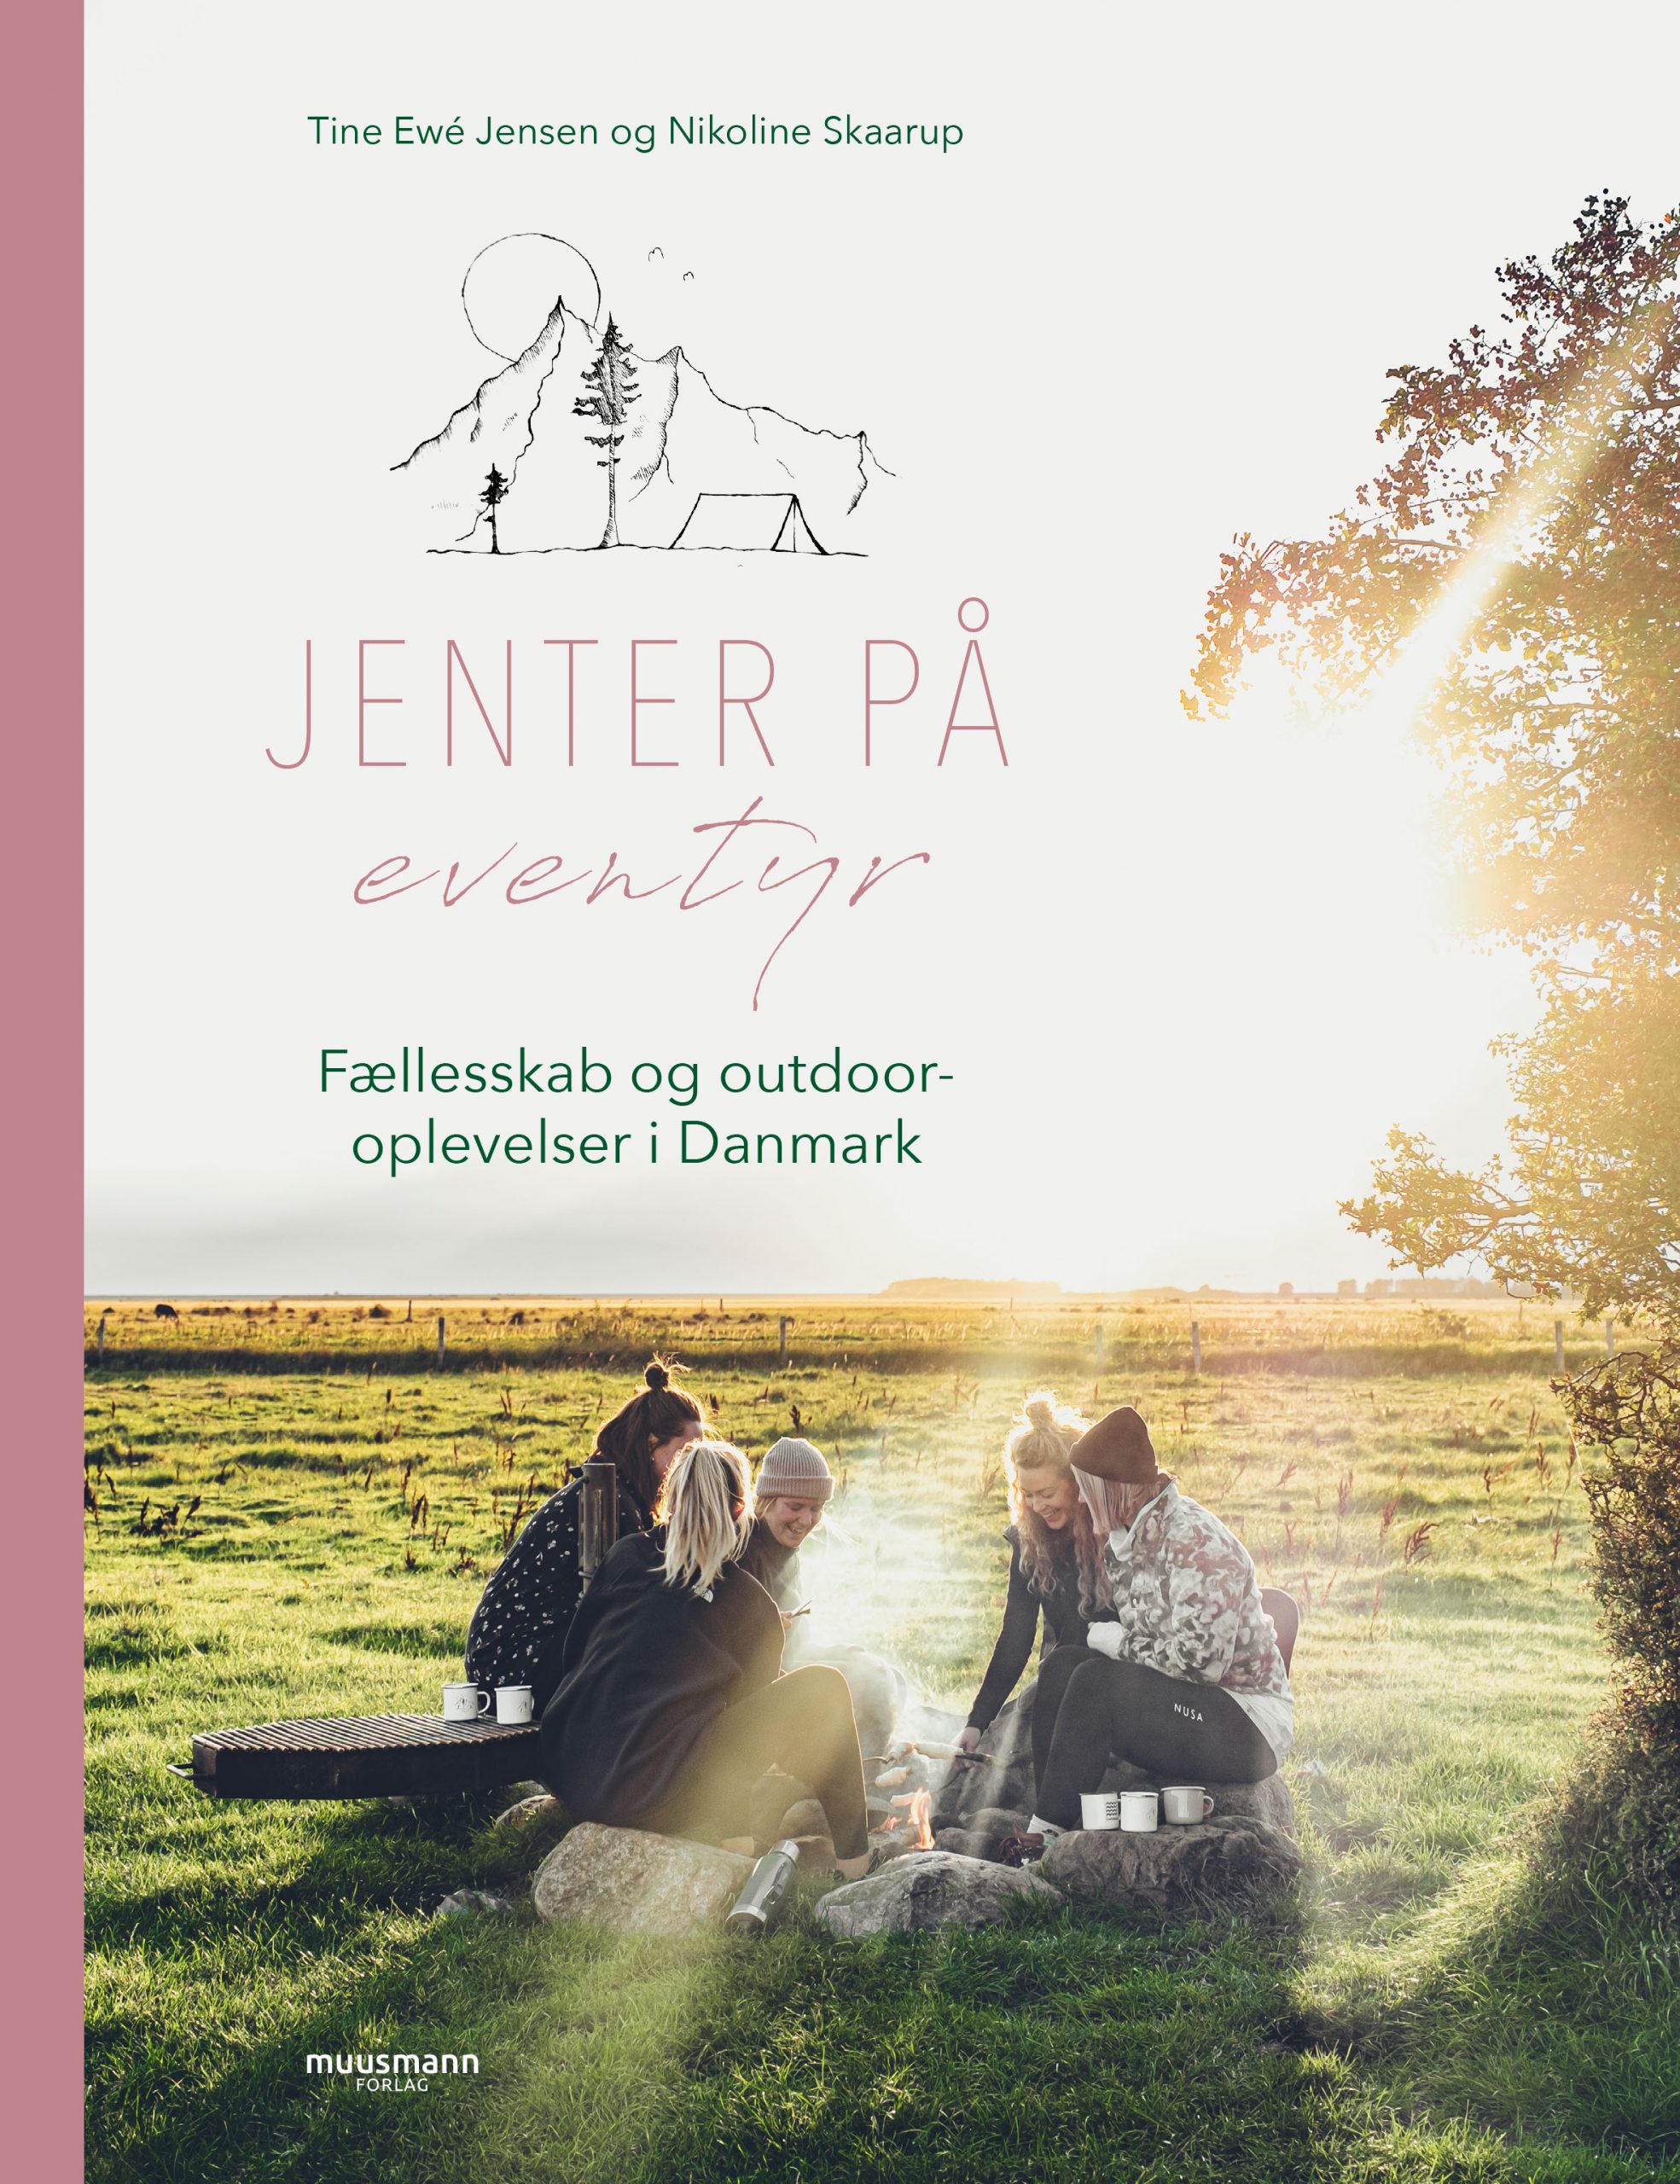 Jenter på eventyr, Fællesskab og outdoor-oplevelser i Danmark af Nikoline Skaarup og Tine Ewé Jensen, bøger til efteråret, Muusmann Forlag